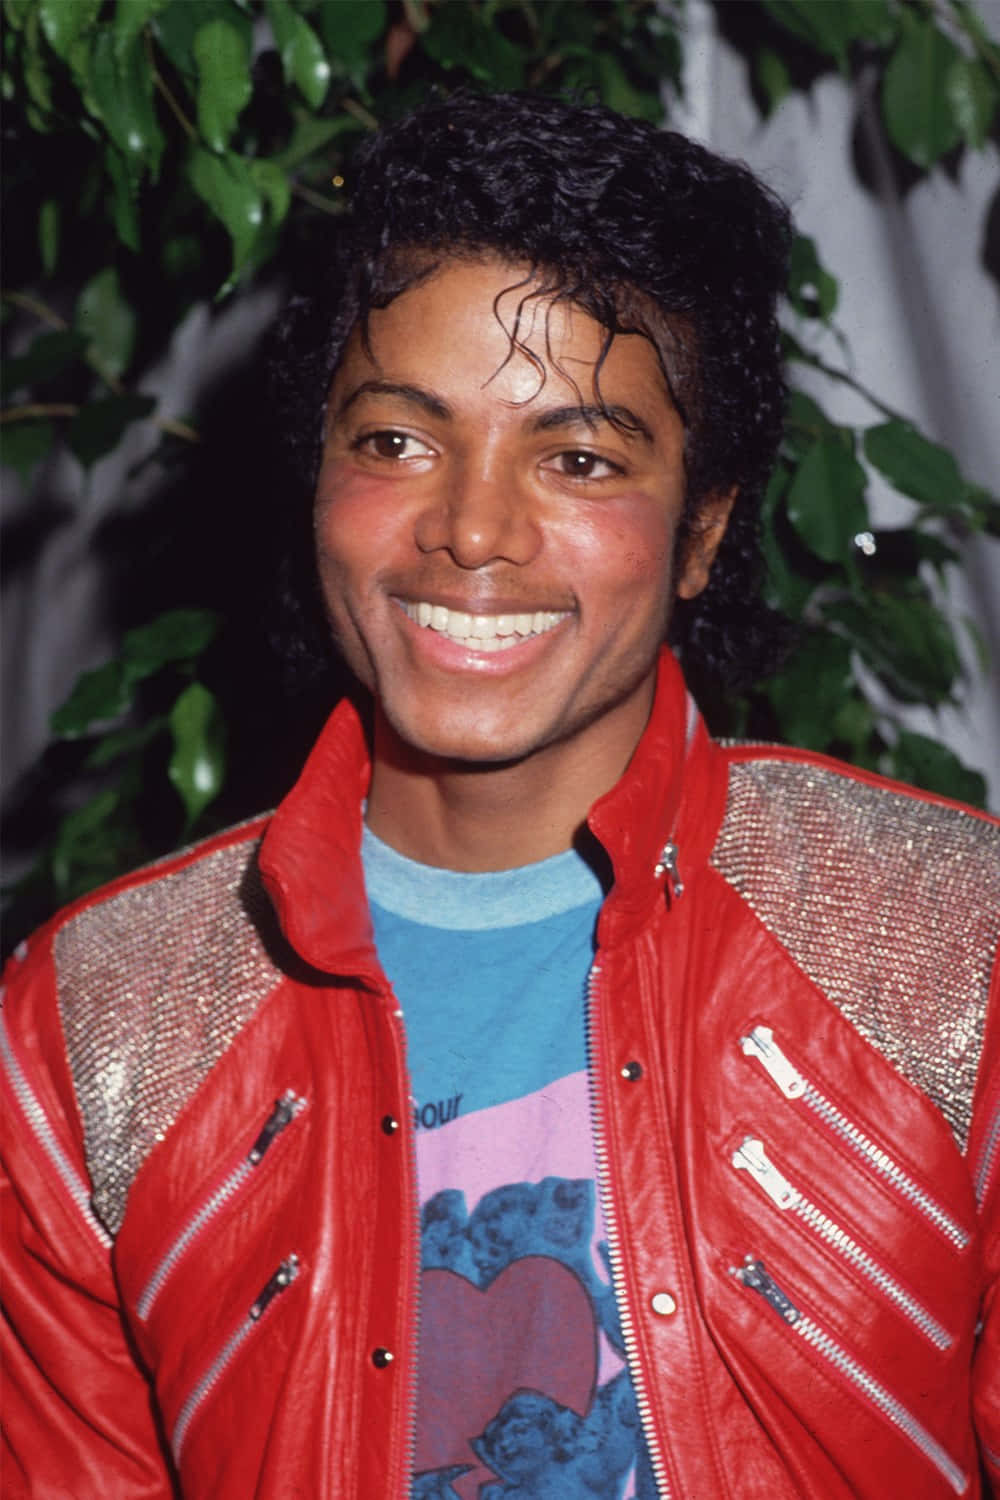 Billeder Af Michael Jackson